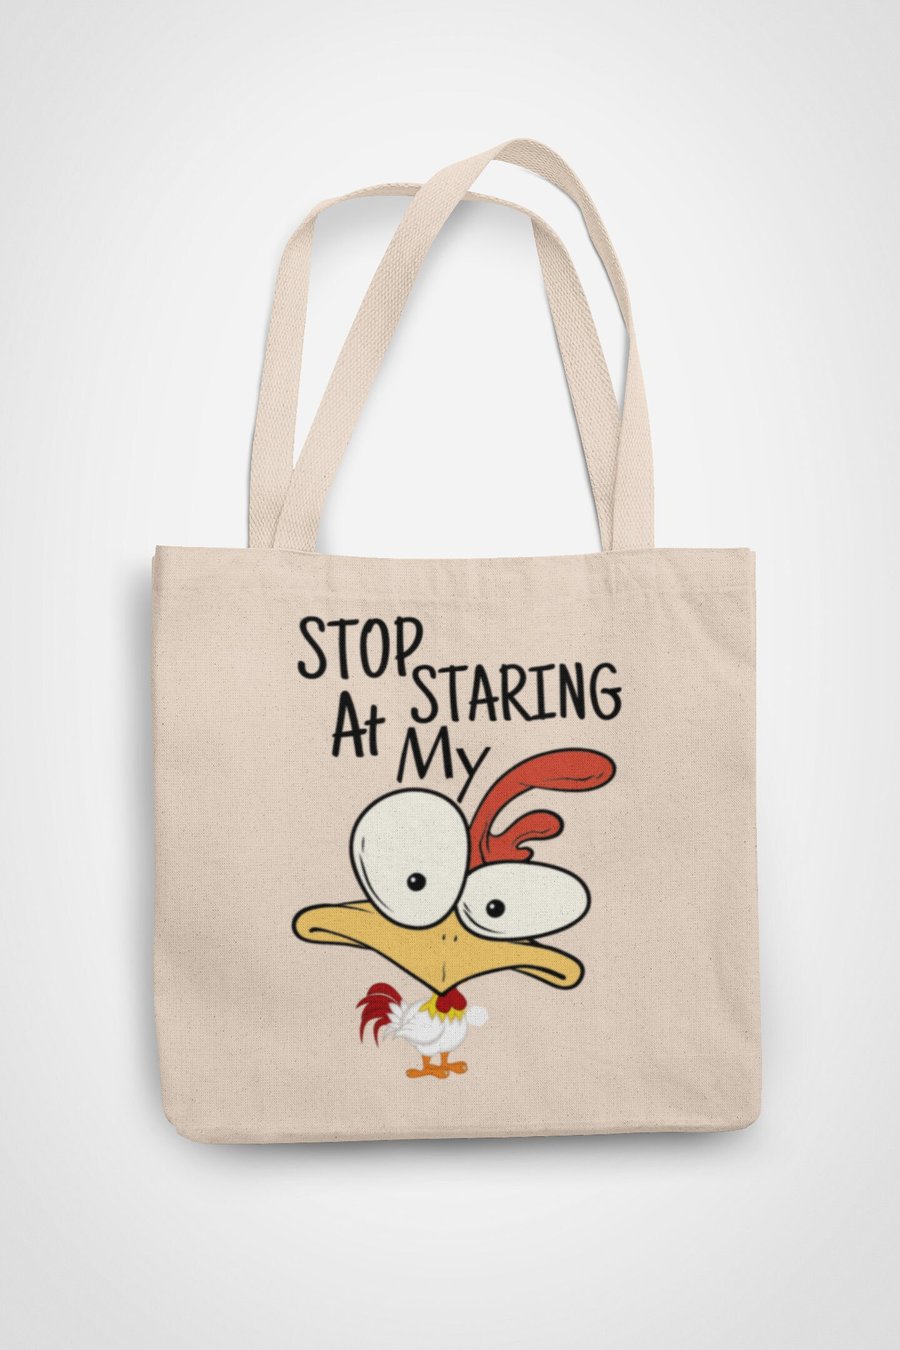 Stop Staring At My ... Cartoon Mug Tote Bag Reusable Cotton bag - funny 